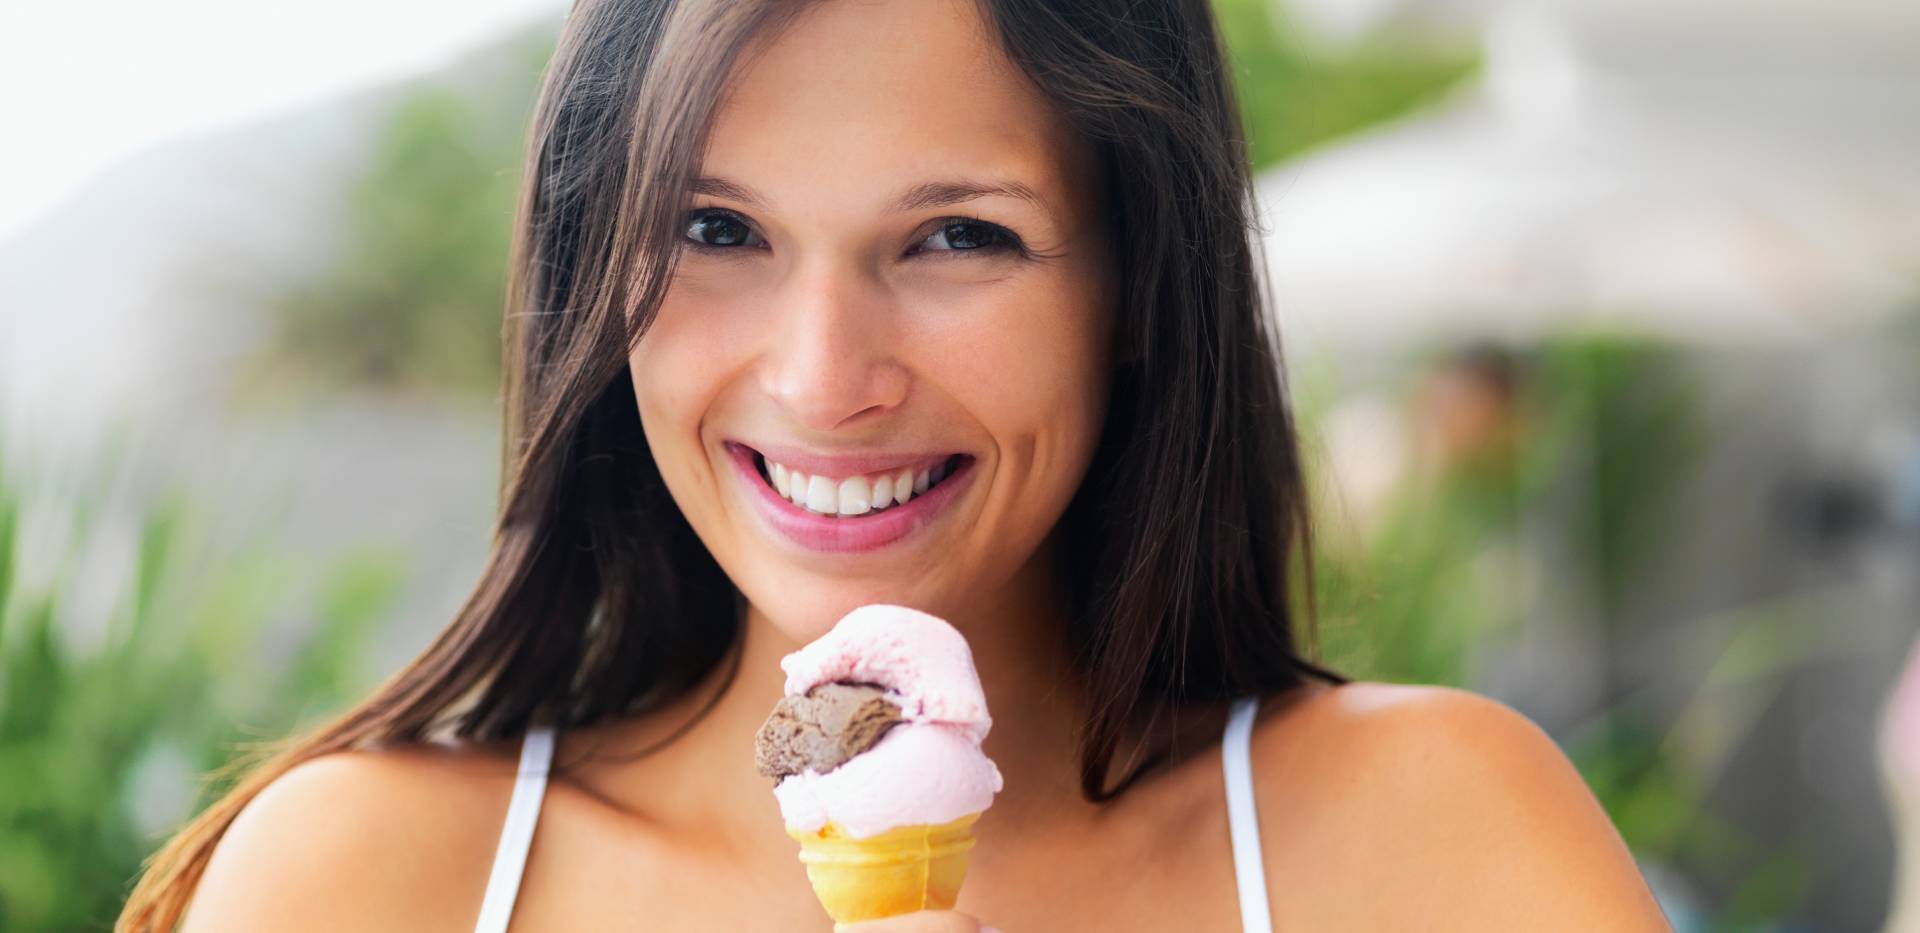 Žena se širokým úsměvem drží zmrzlinu.